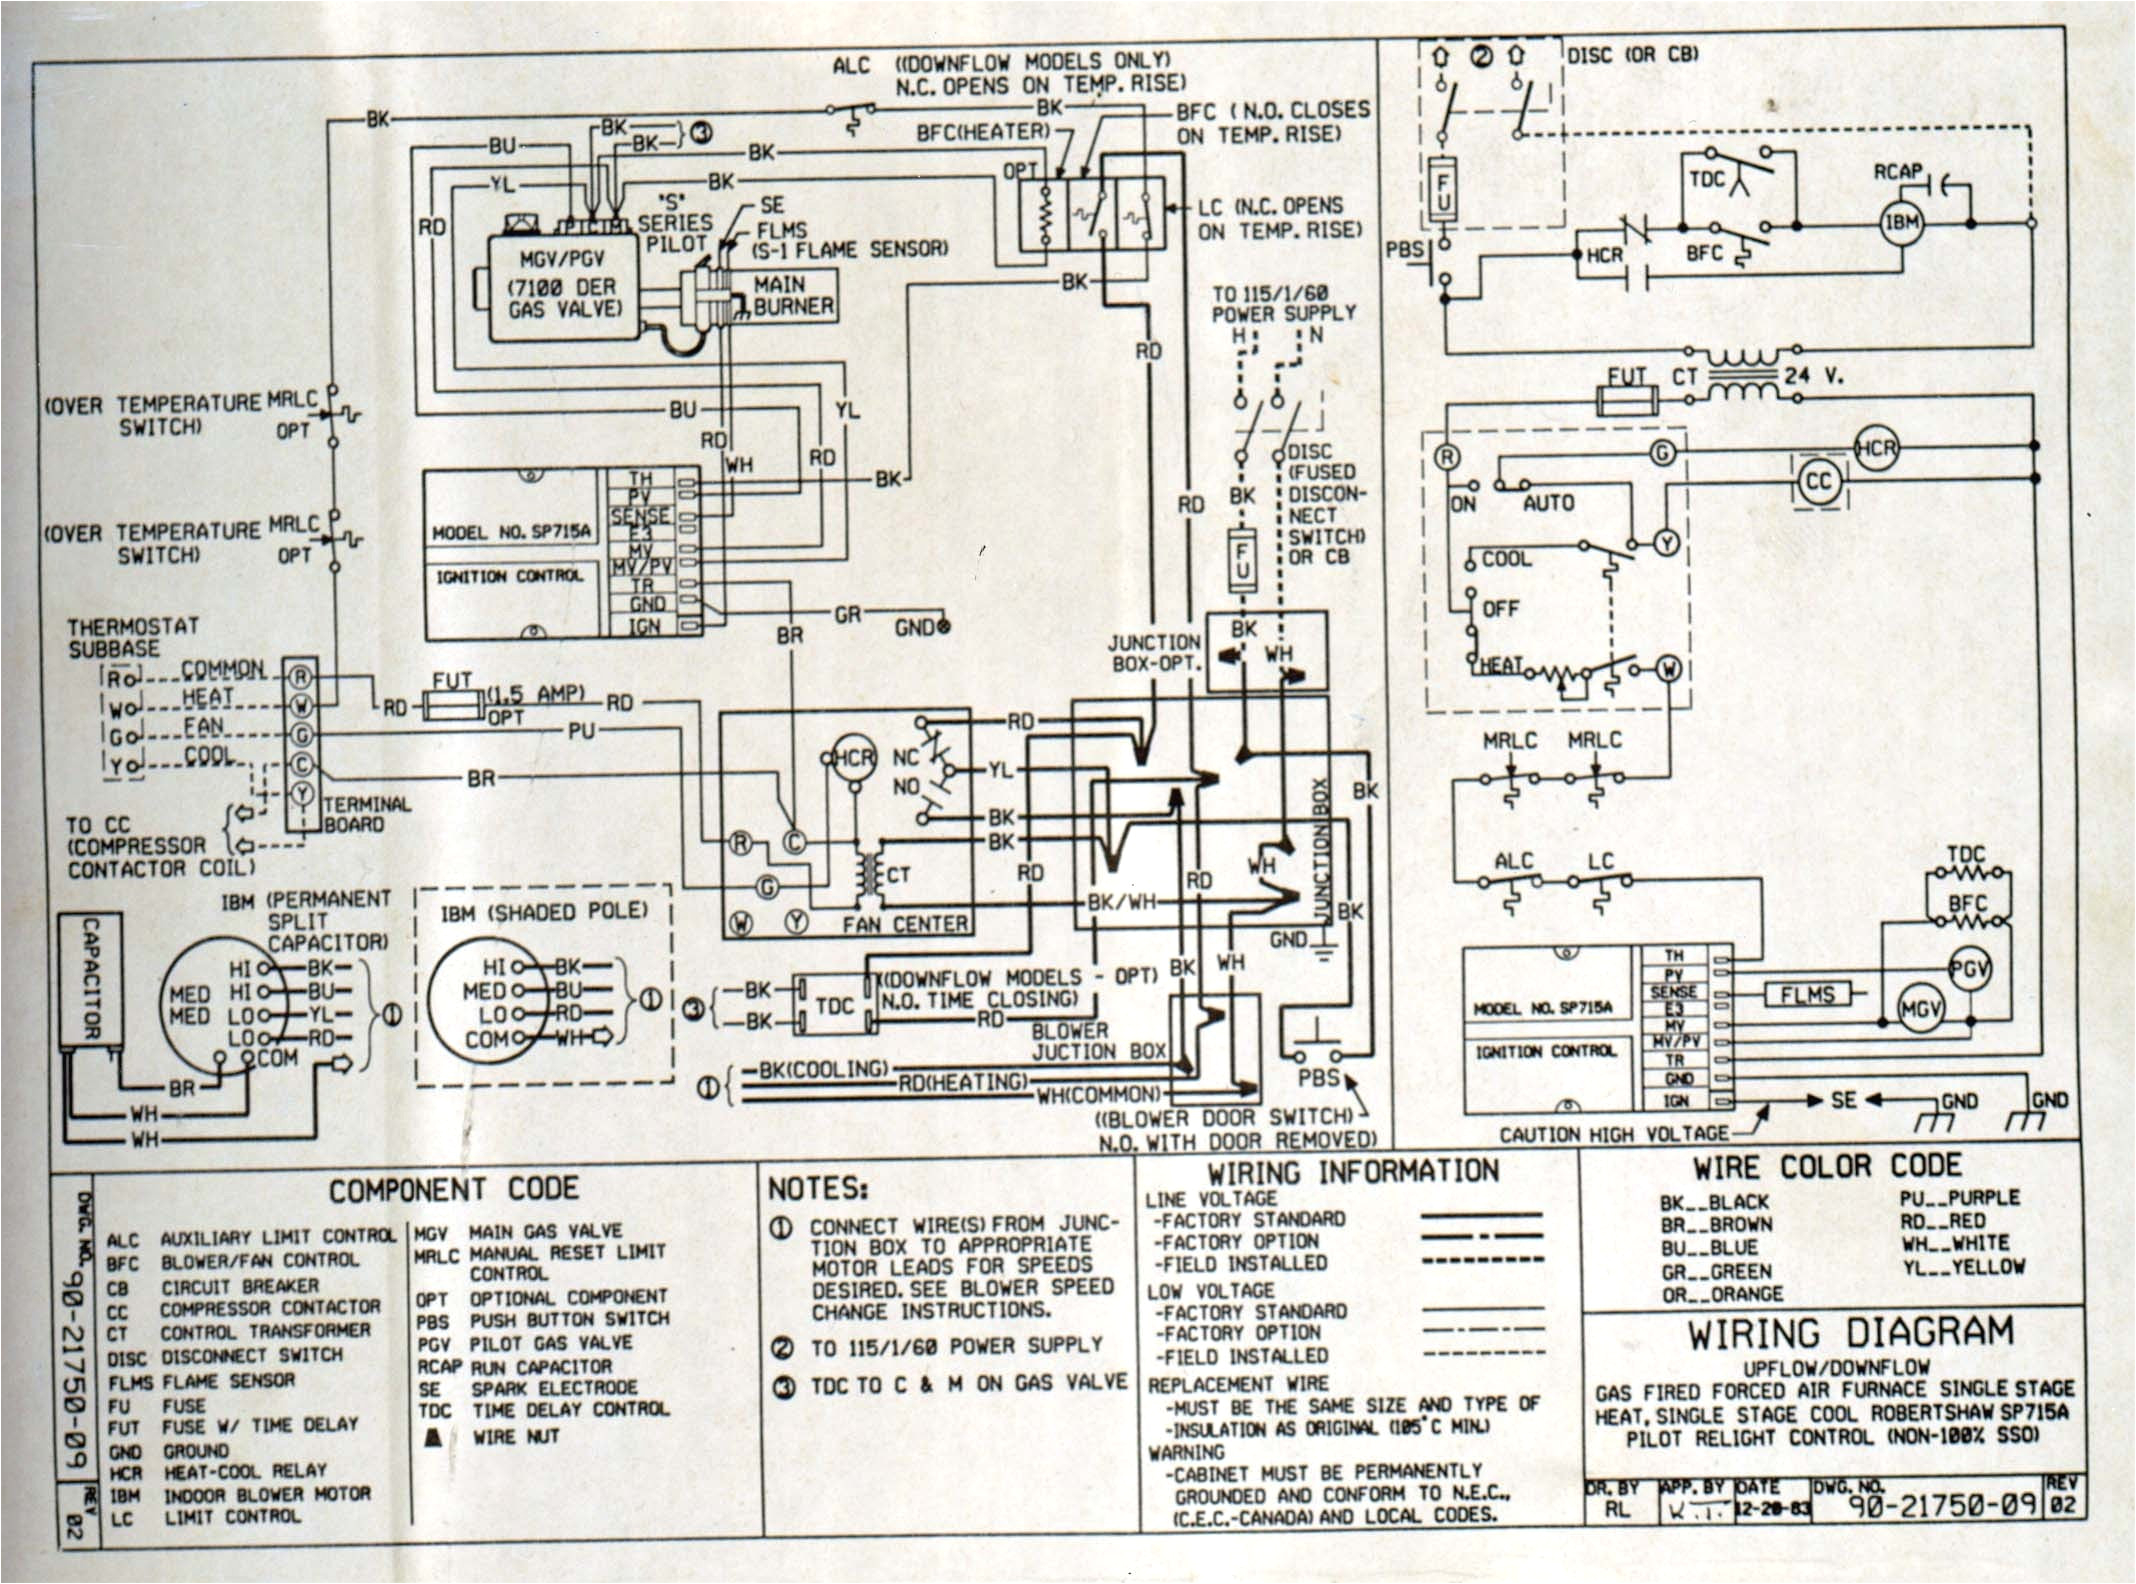 first company air handler wiring diagram best of ruud air handler nordyne heat strip wiring diagram